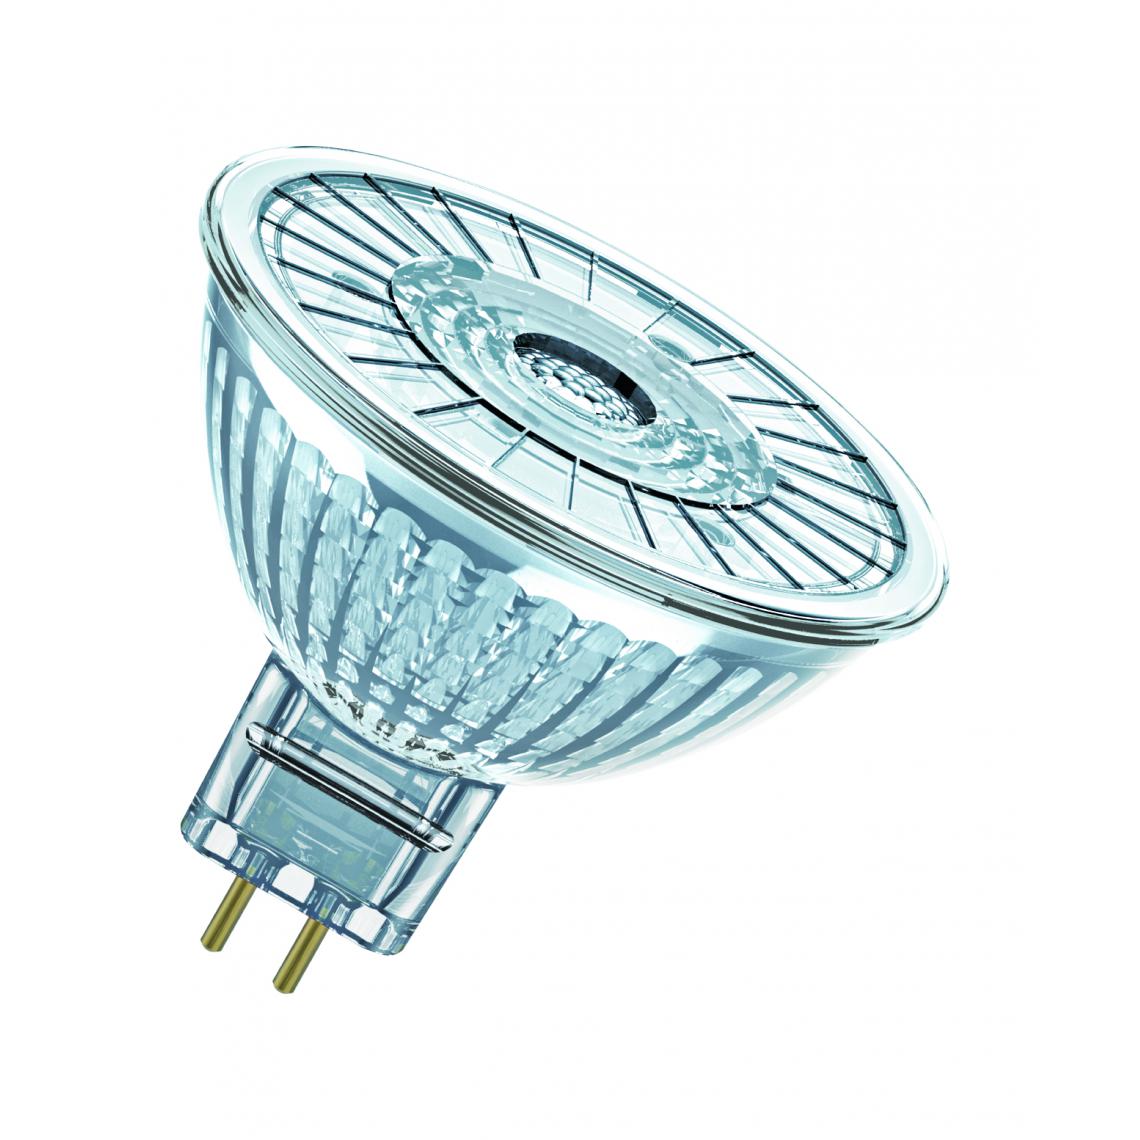 Osram - ampoule à led - osram parathom - gu5.3 - 4.9w - 3000k - 350 lm - mr16 - dimmable - osram 431478 - Ampoules LED